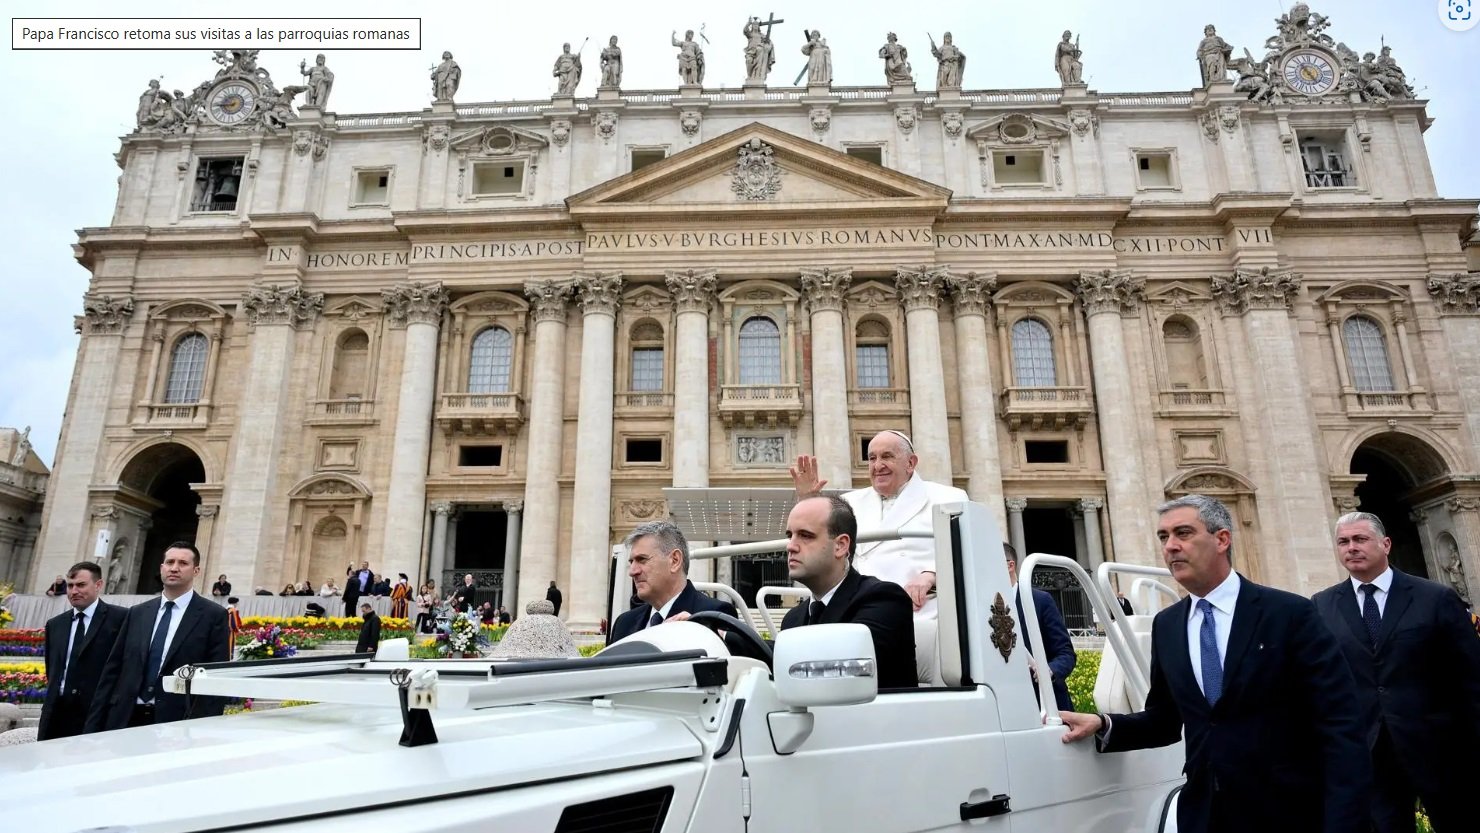 Papa Francisco retoma sus visitas a las parroquias romanas